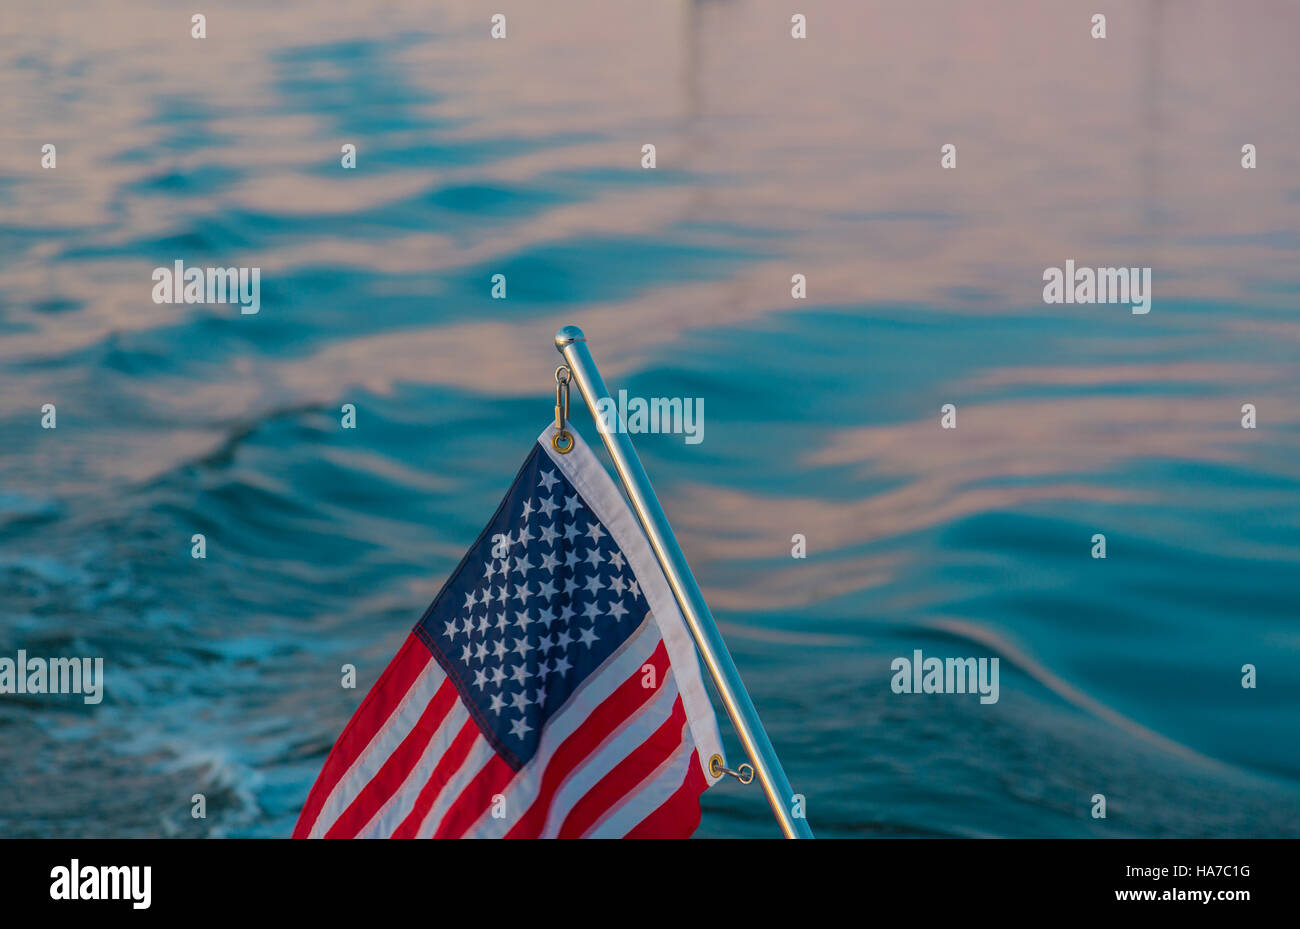 Detailbild der eine amerikanische Flagge auf einem Edelstahl-Mast mit Salz Wasser im Hintergrund Stockfoto